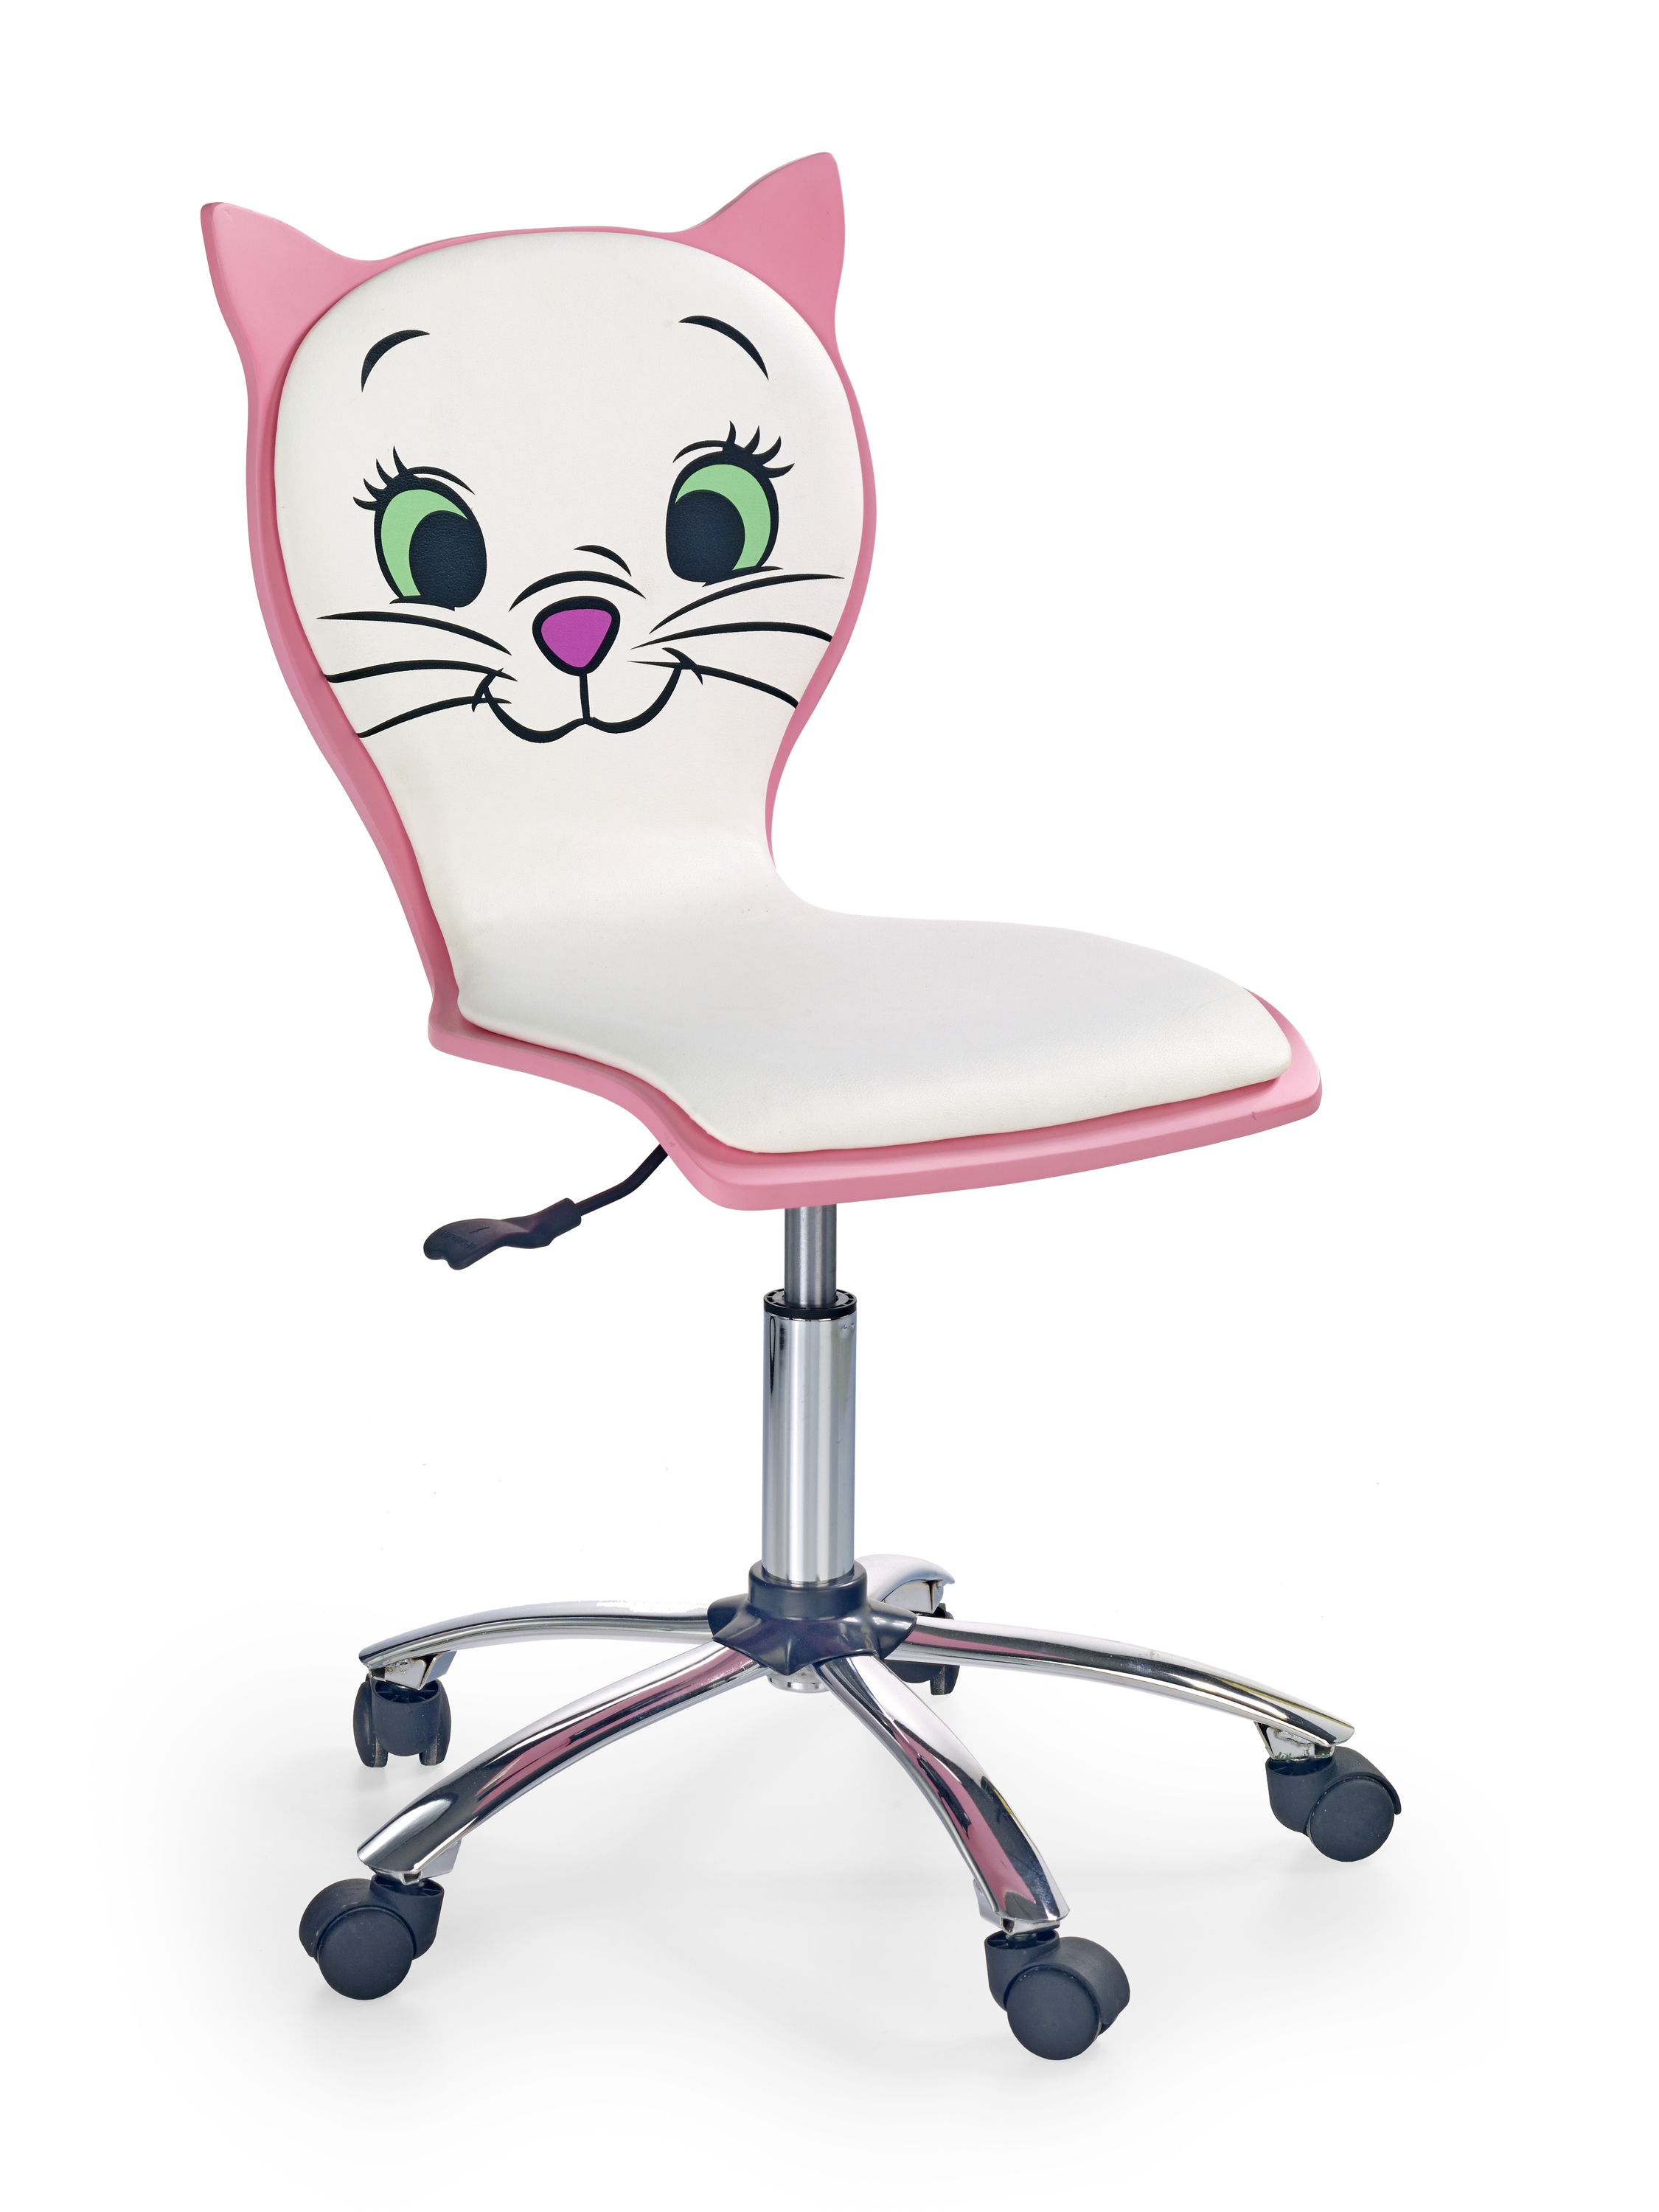 Kancelárske kreslo Kitty 2 - Biely/Ružová Kancelárske kreslo kitty 2 - Biely / Ružová